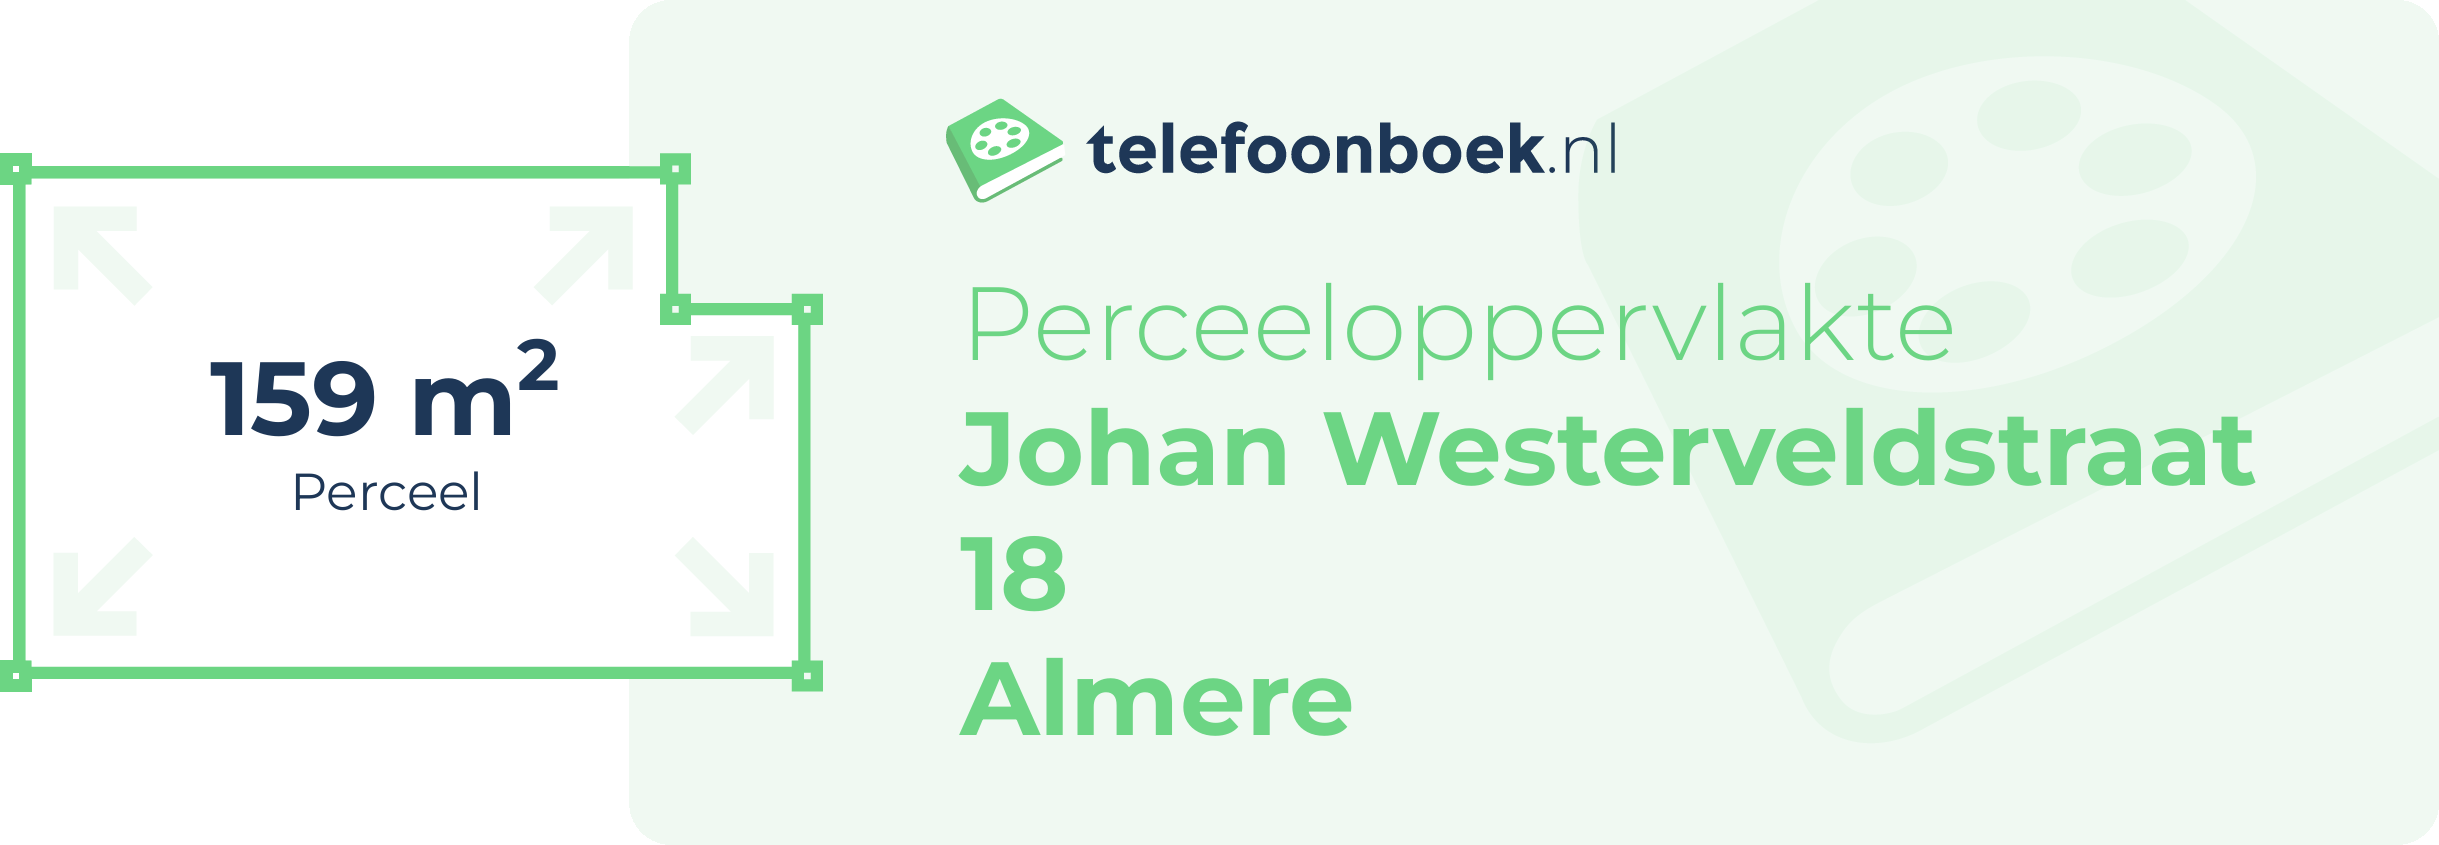 Perceeloppervlakte Johan Westerveldstraat 18 Almere